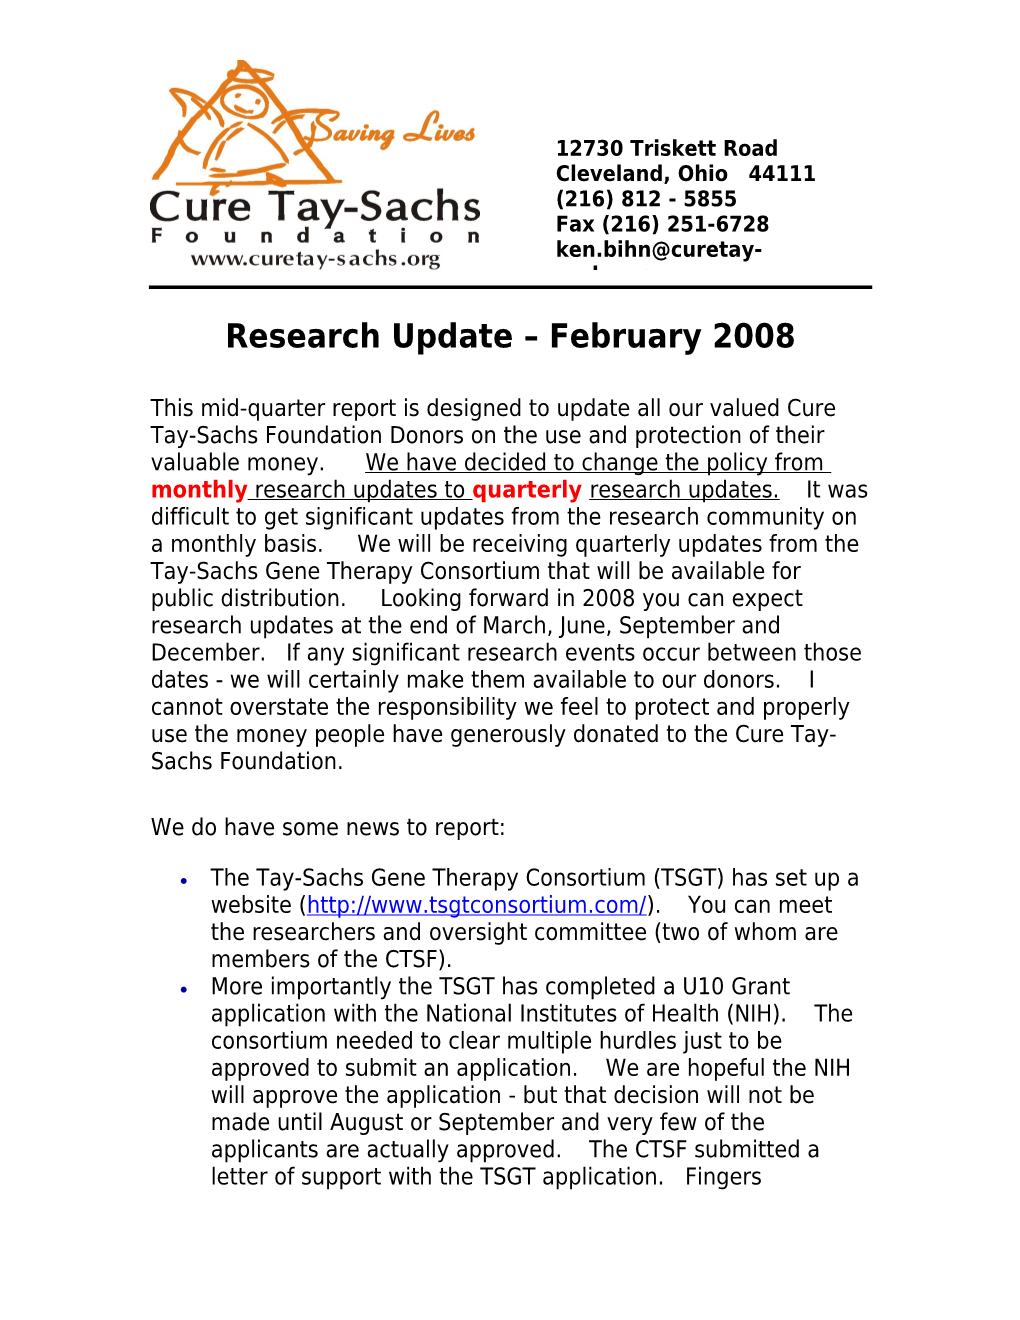 Research Update February 2008